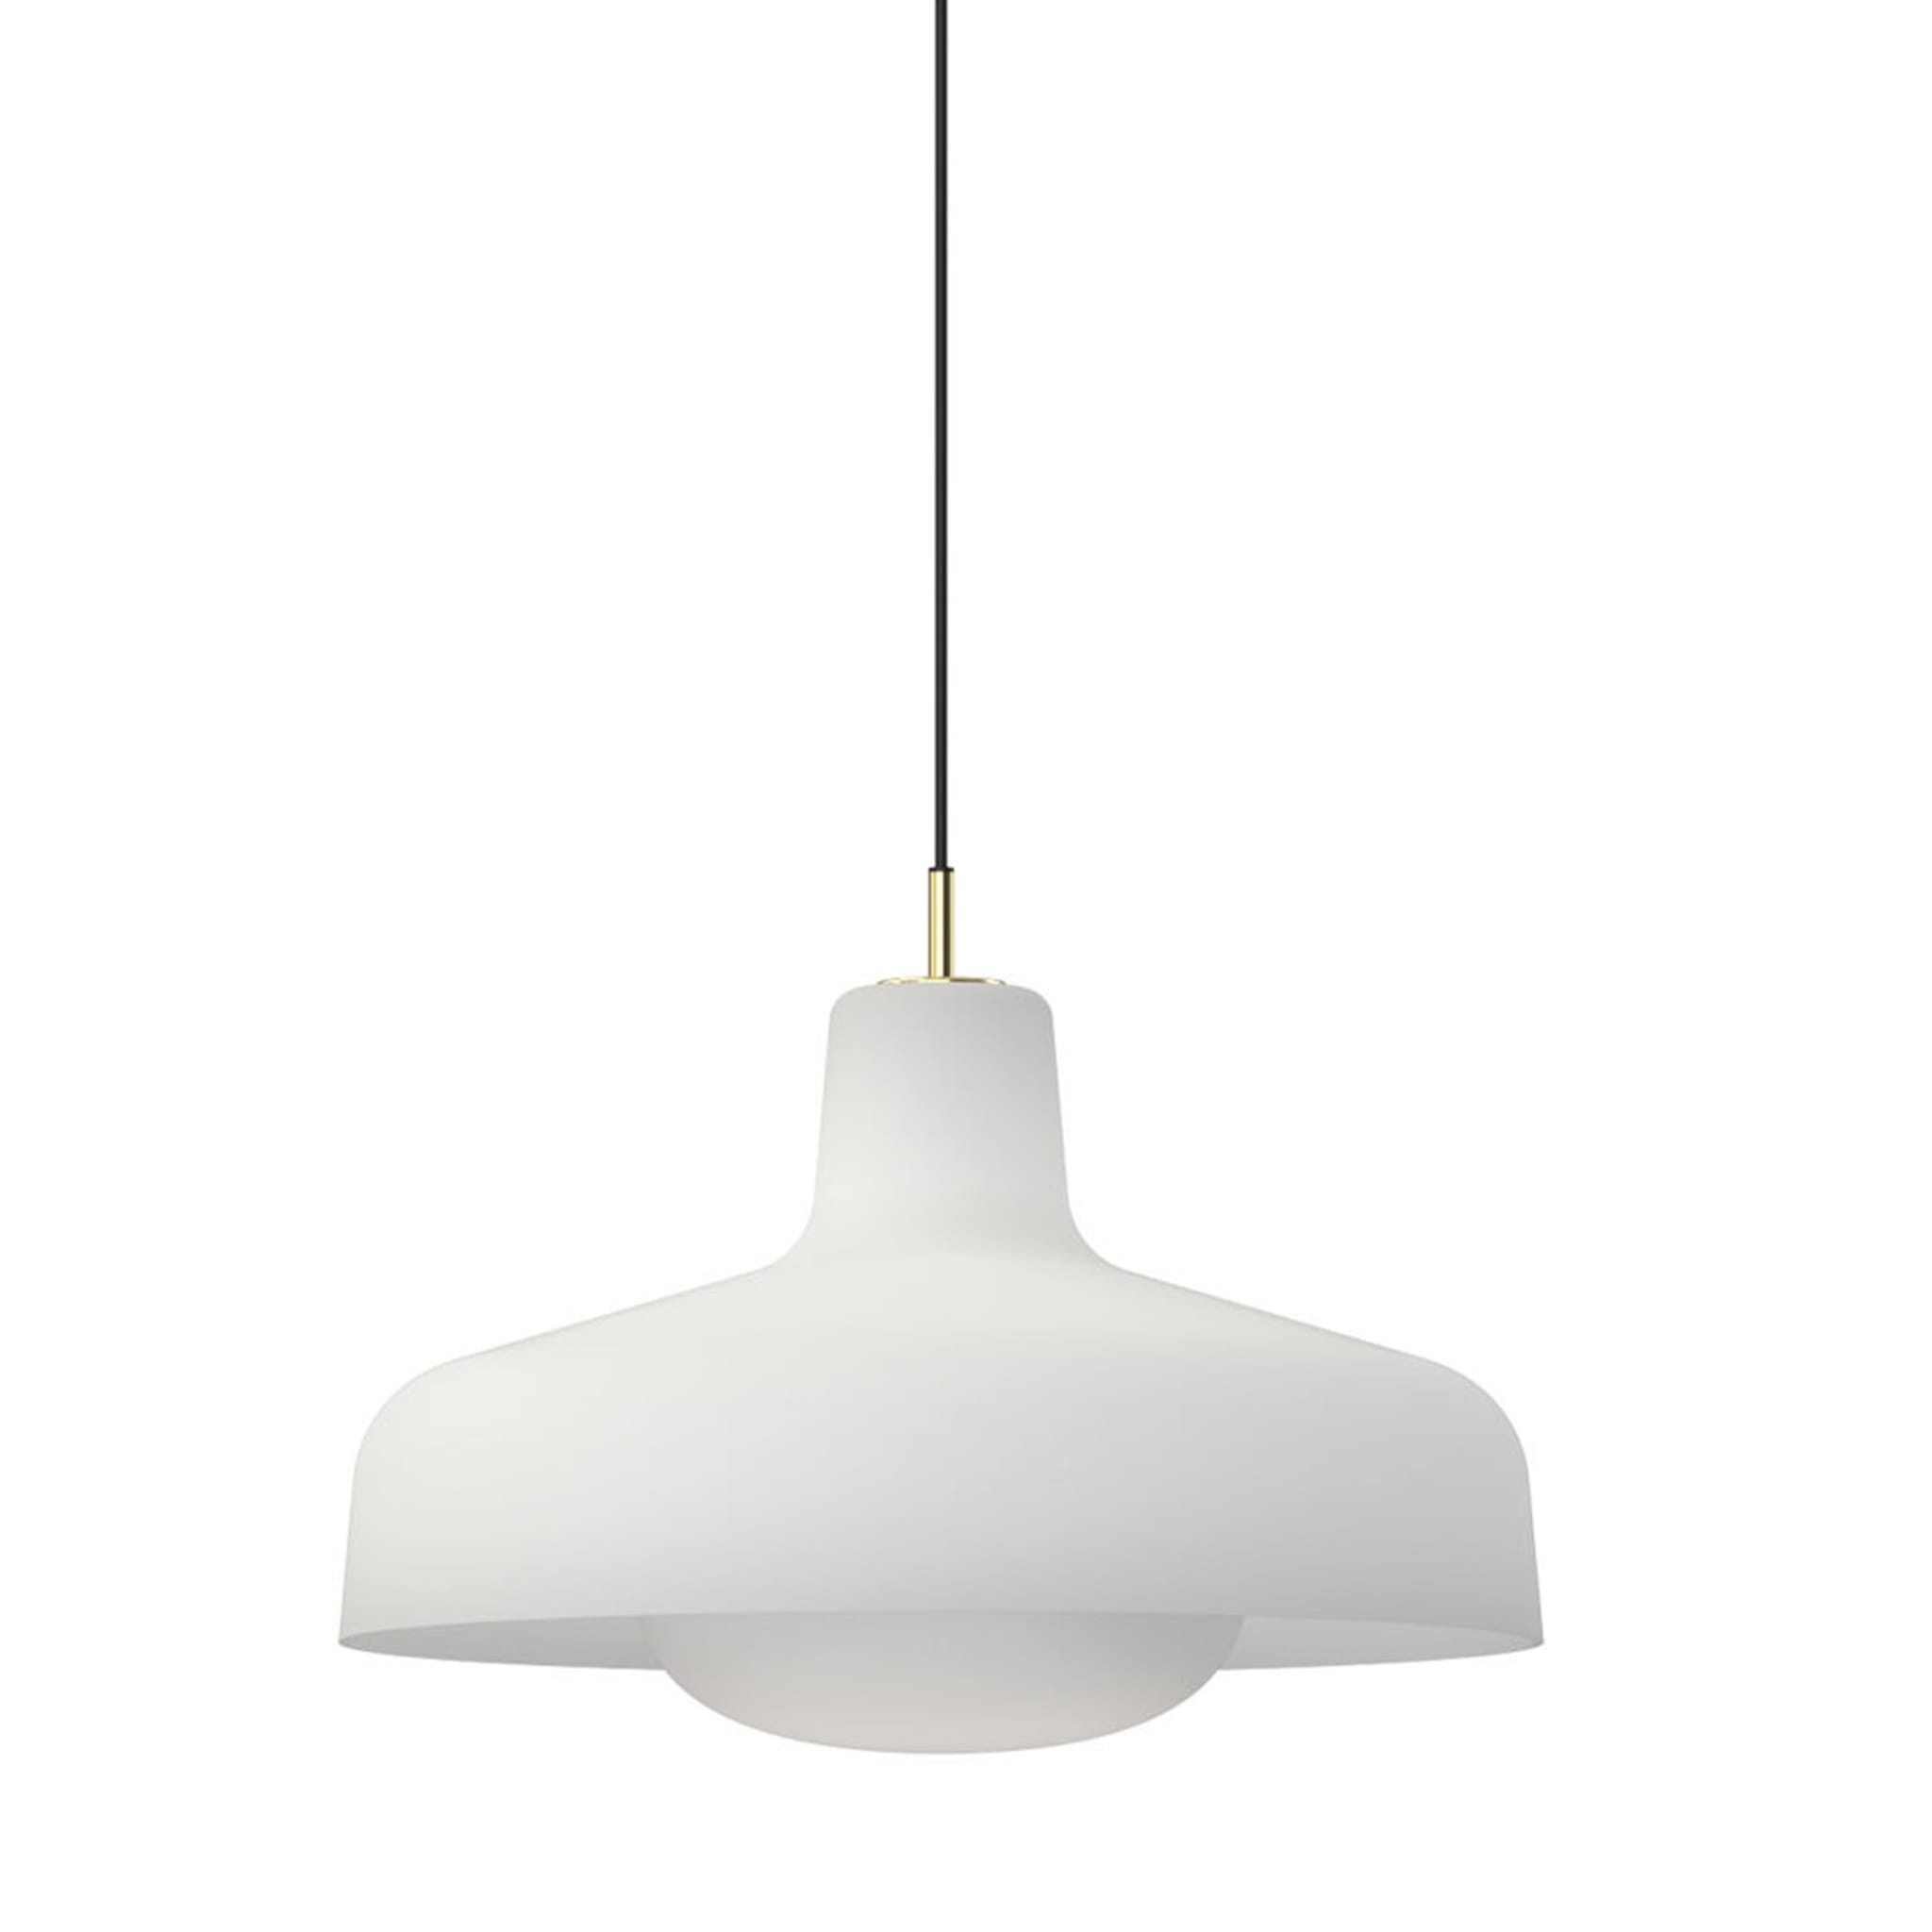 Paolina White Pendant Lamp by Ignazio Gardella - Main view